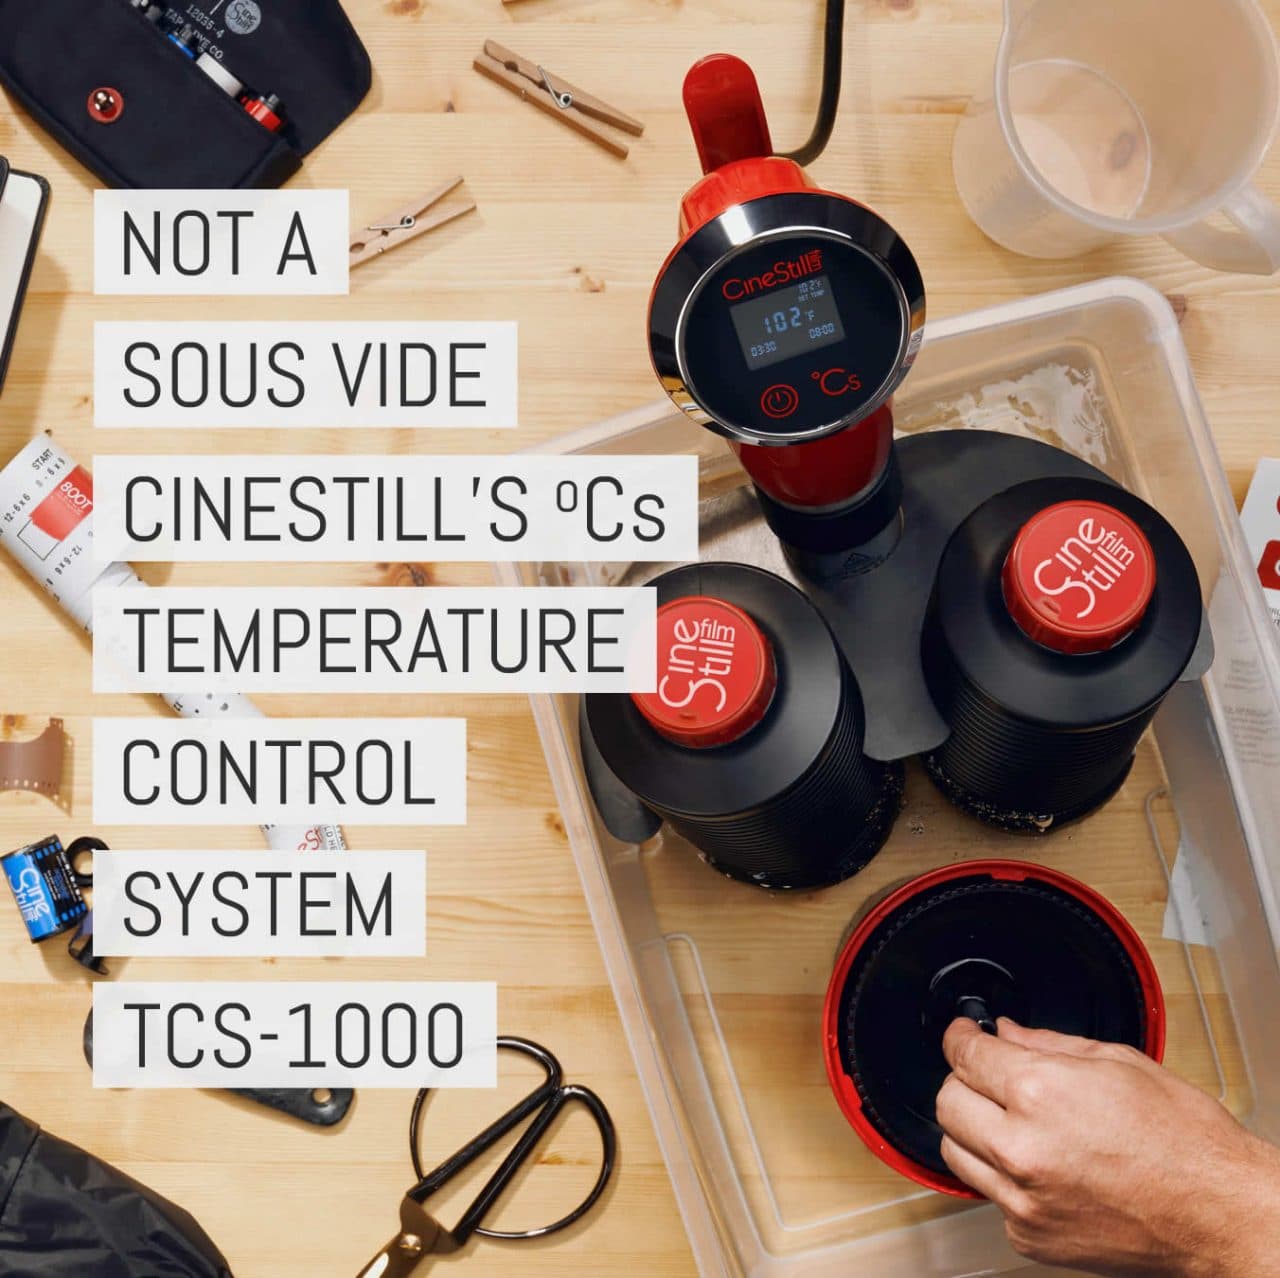 Not a sous vide cooker: Cinestill's ºCs “Temperature Control